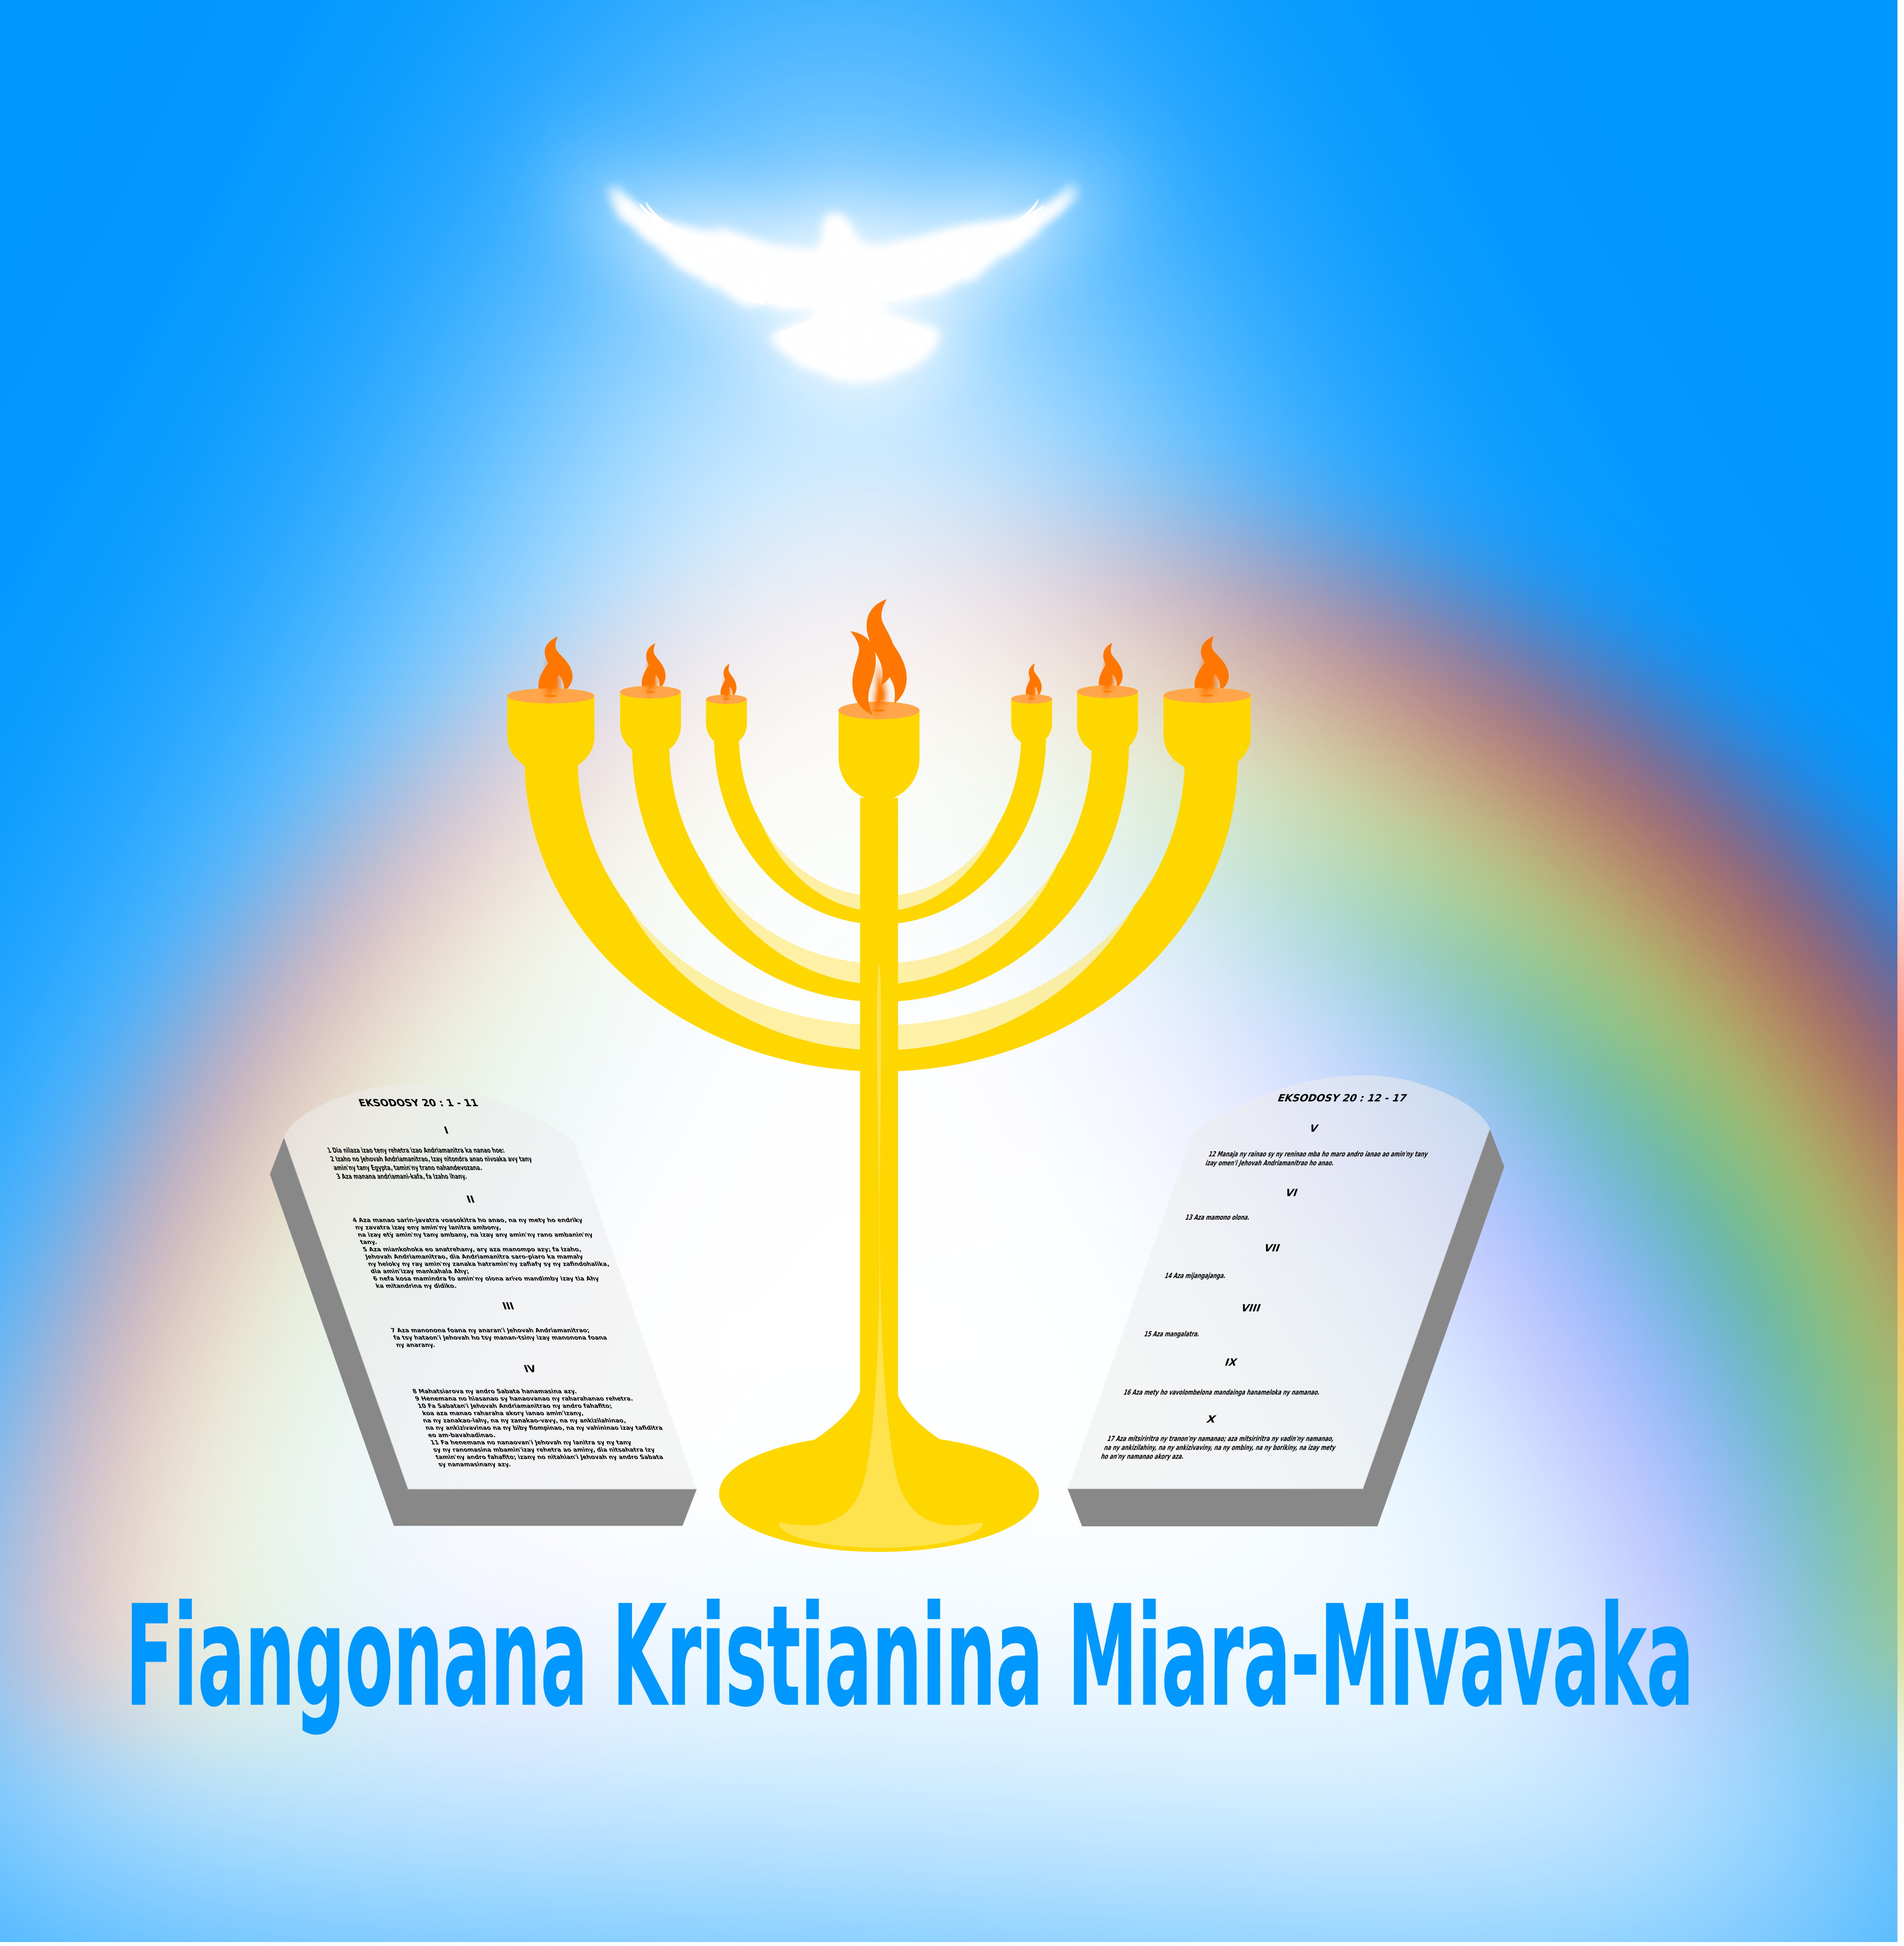 Fiangonana Kristianina Miara-Mivavaka